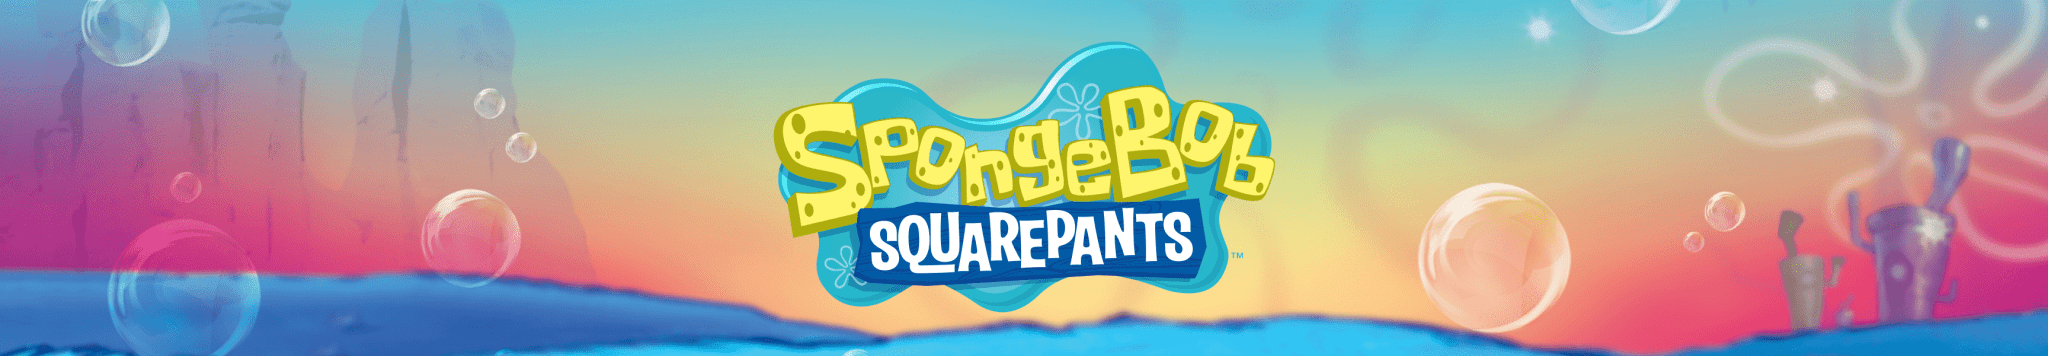 SpongeBob SquarePants Last Chance Gifts